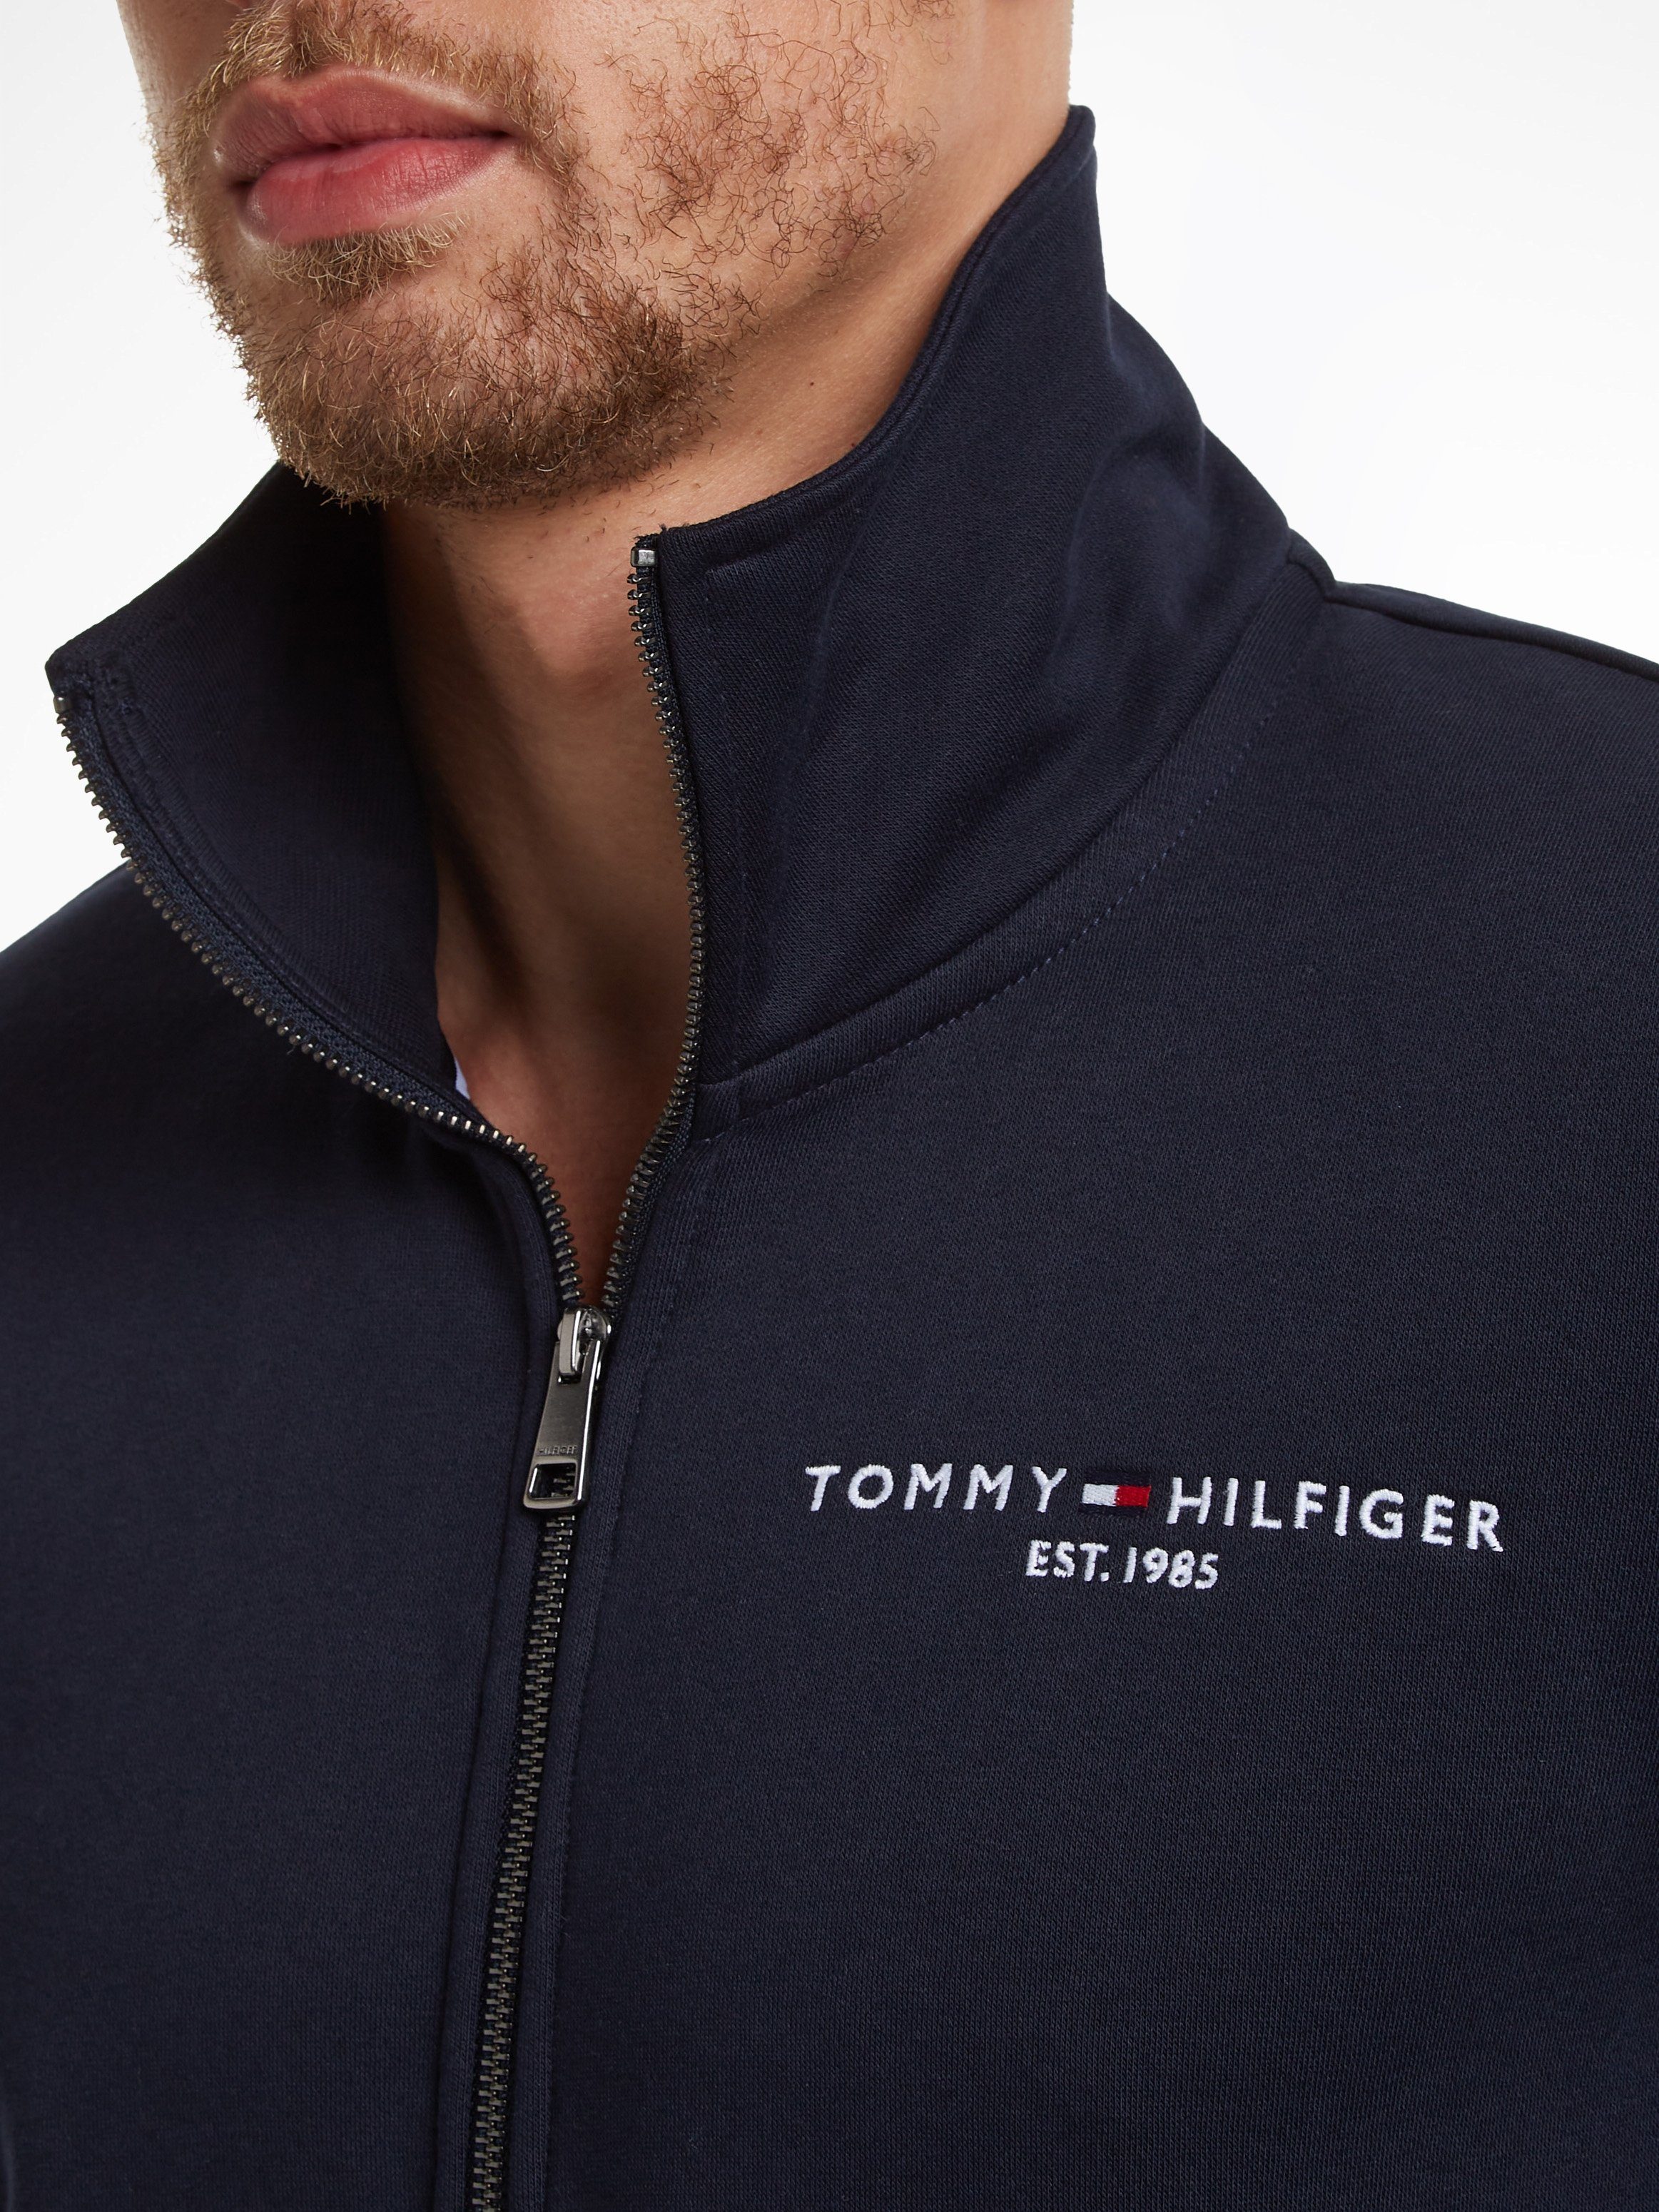 Tommy Hilfiger Sweater TOMMY LOGO THRU COLLAR und Kängurutasche mit Reißverschluss geteilter blau STAND ZIP